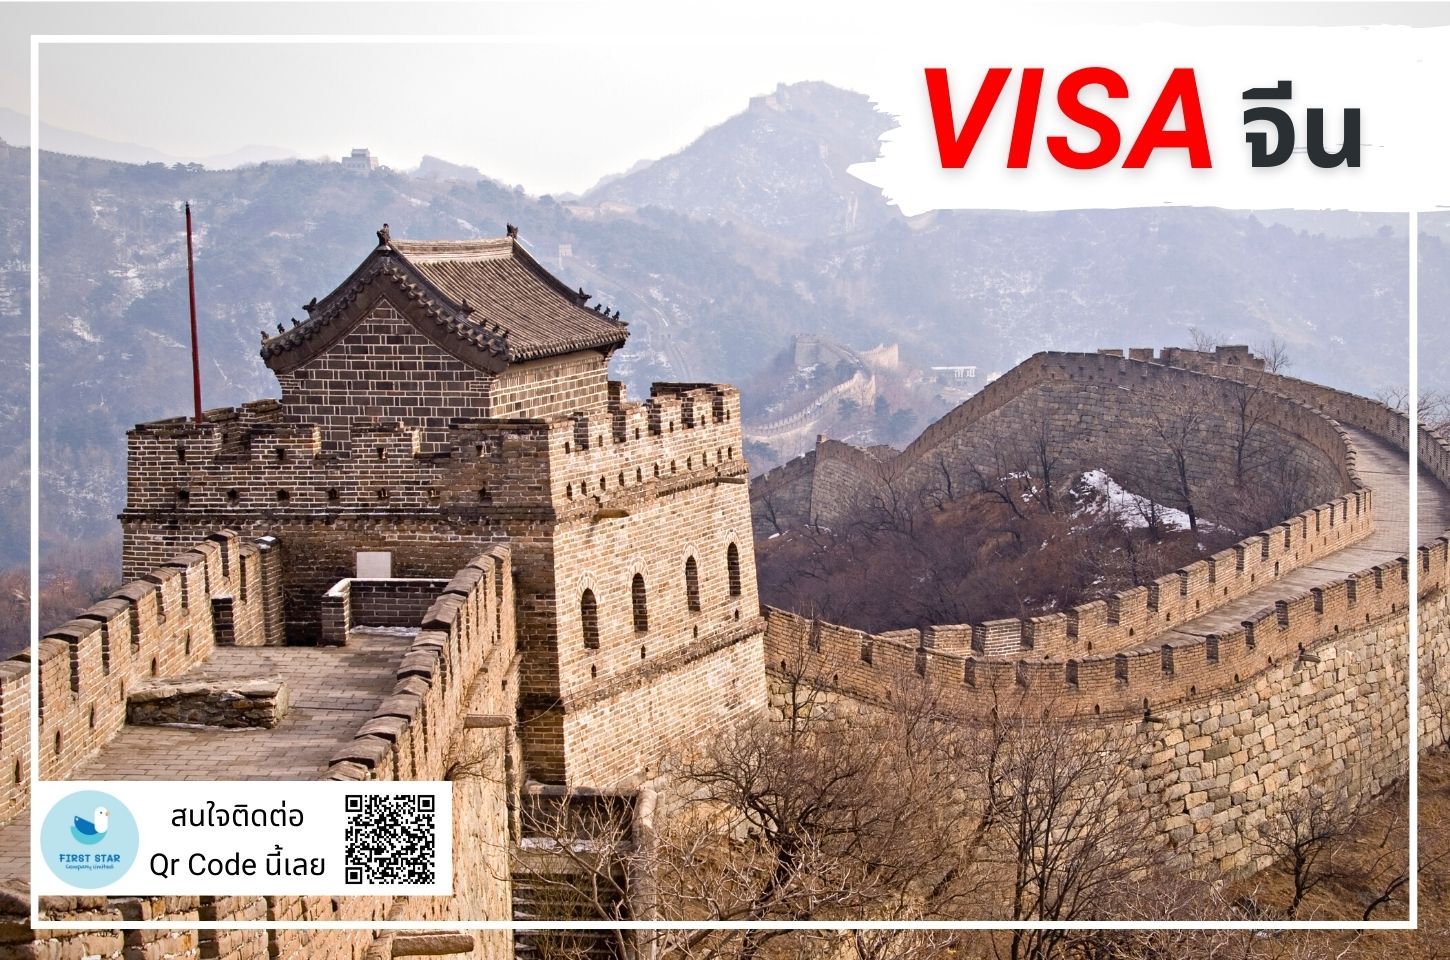 บริการรับยื่นวีซ่าจีน ( China Visa )